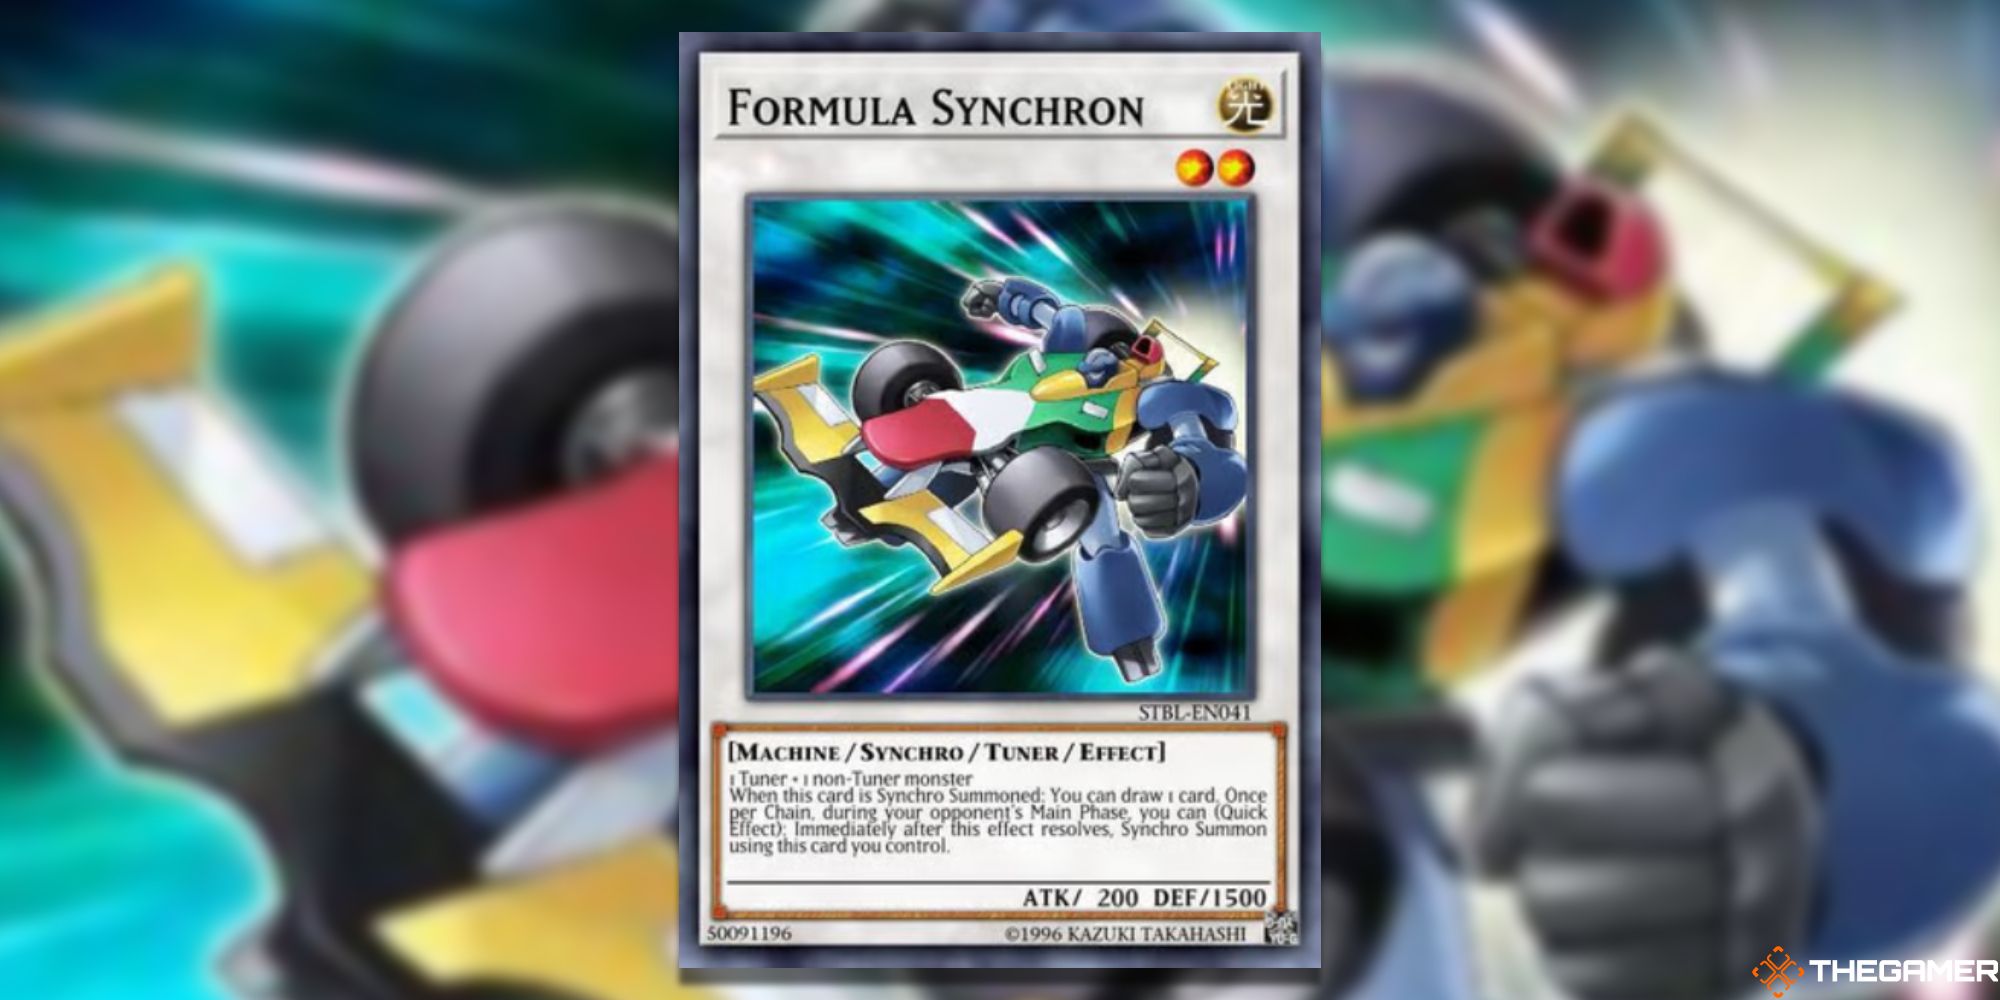 Yu-Gi-Oh! Formula Synchron on blurred background